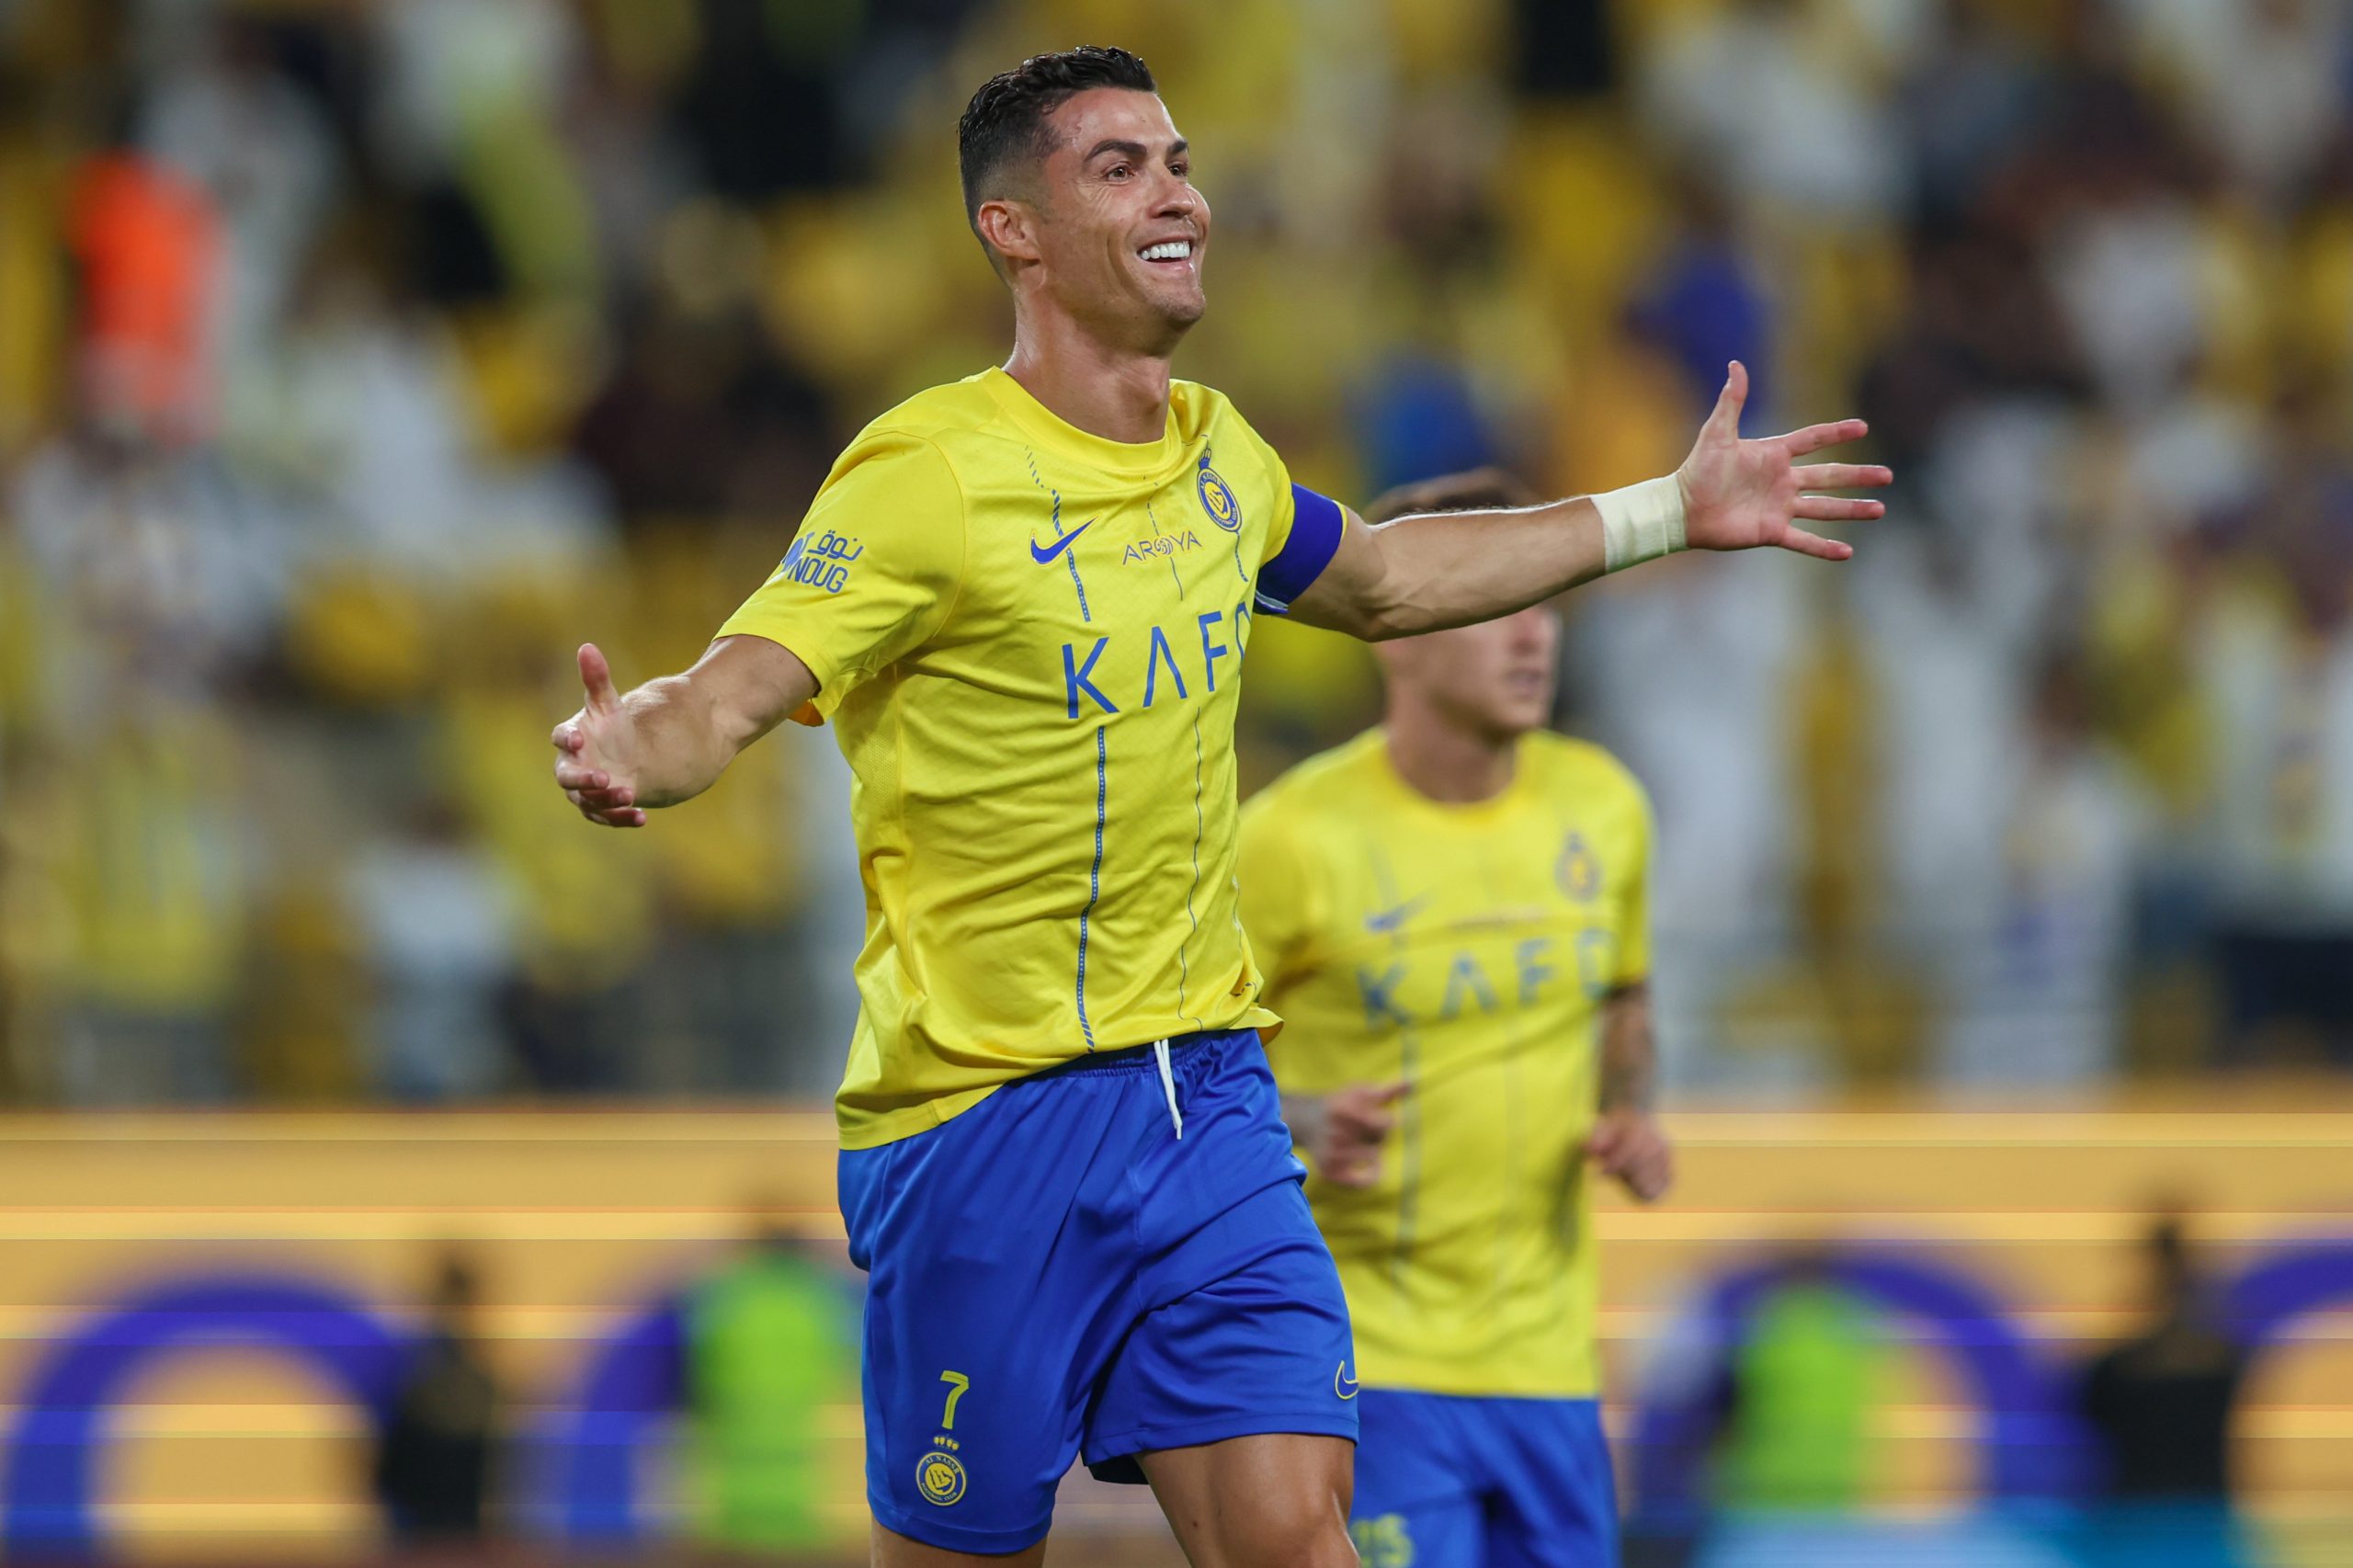 Cristiano Ronaldo comemora um de seus gols no jogo entre Al-Nassr e Al-Wehda (Foto: Yasser Bakhsh | Getty Images)